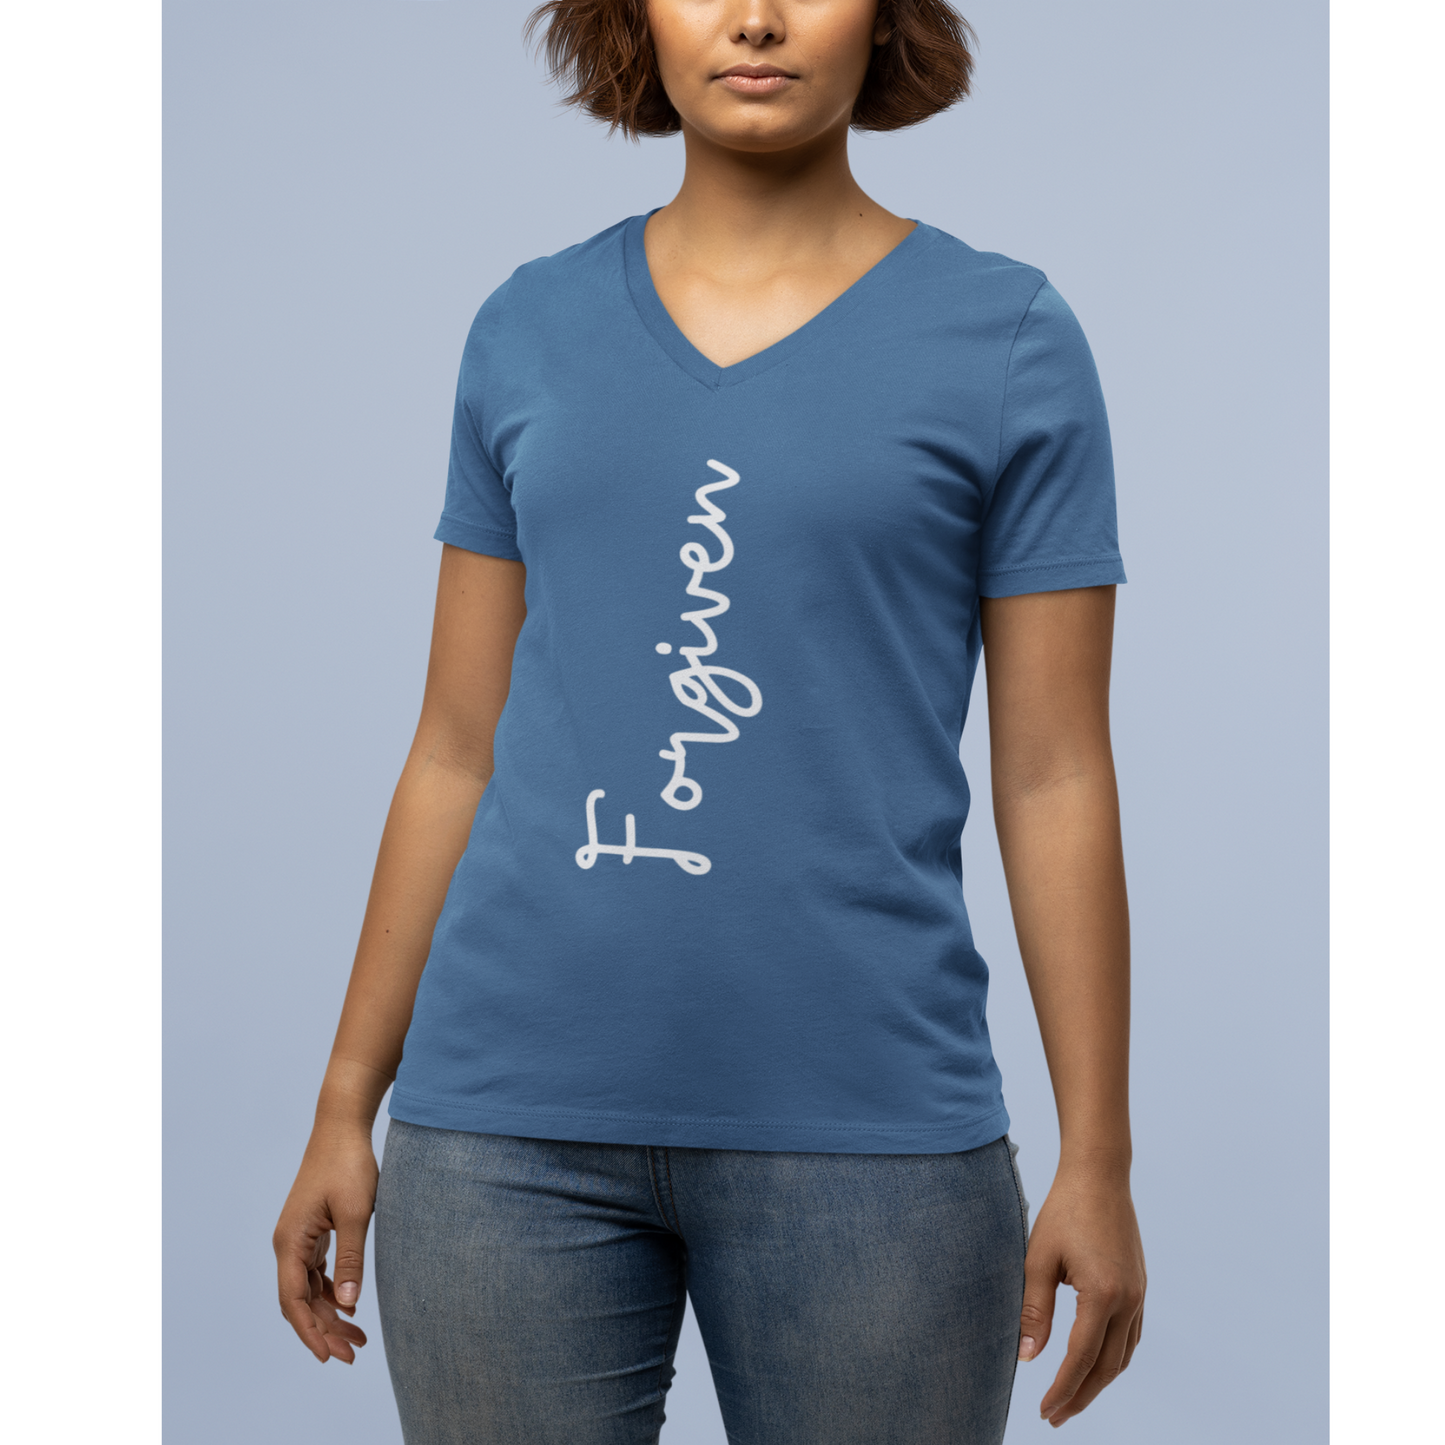 Forgiven T-Shirt, Women's Empowerment Tee, Christian Tee, Faith Apparel, Faith-Based Apparel, Christian Apparel